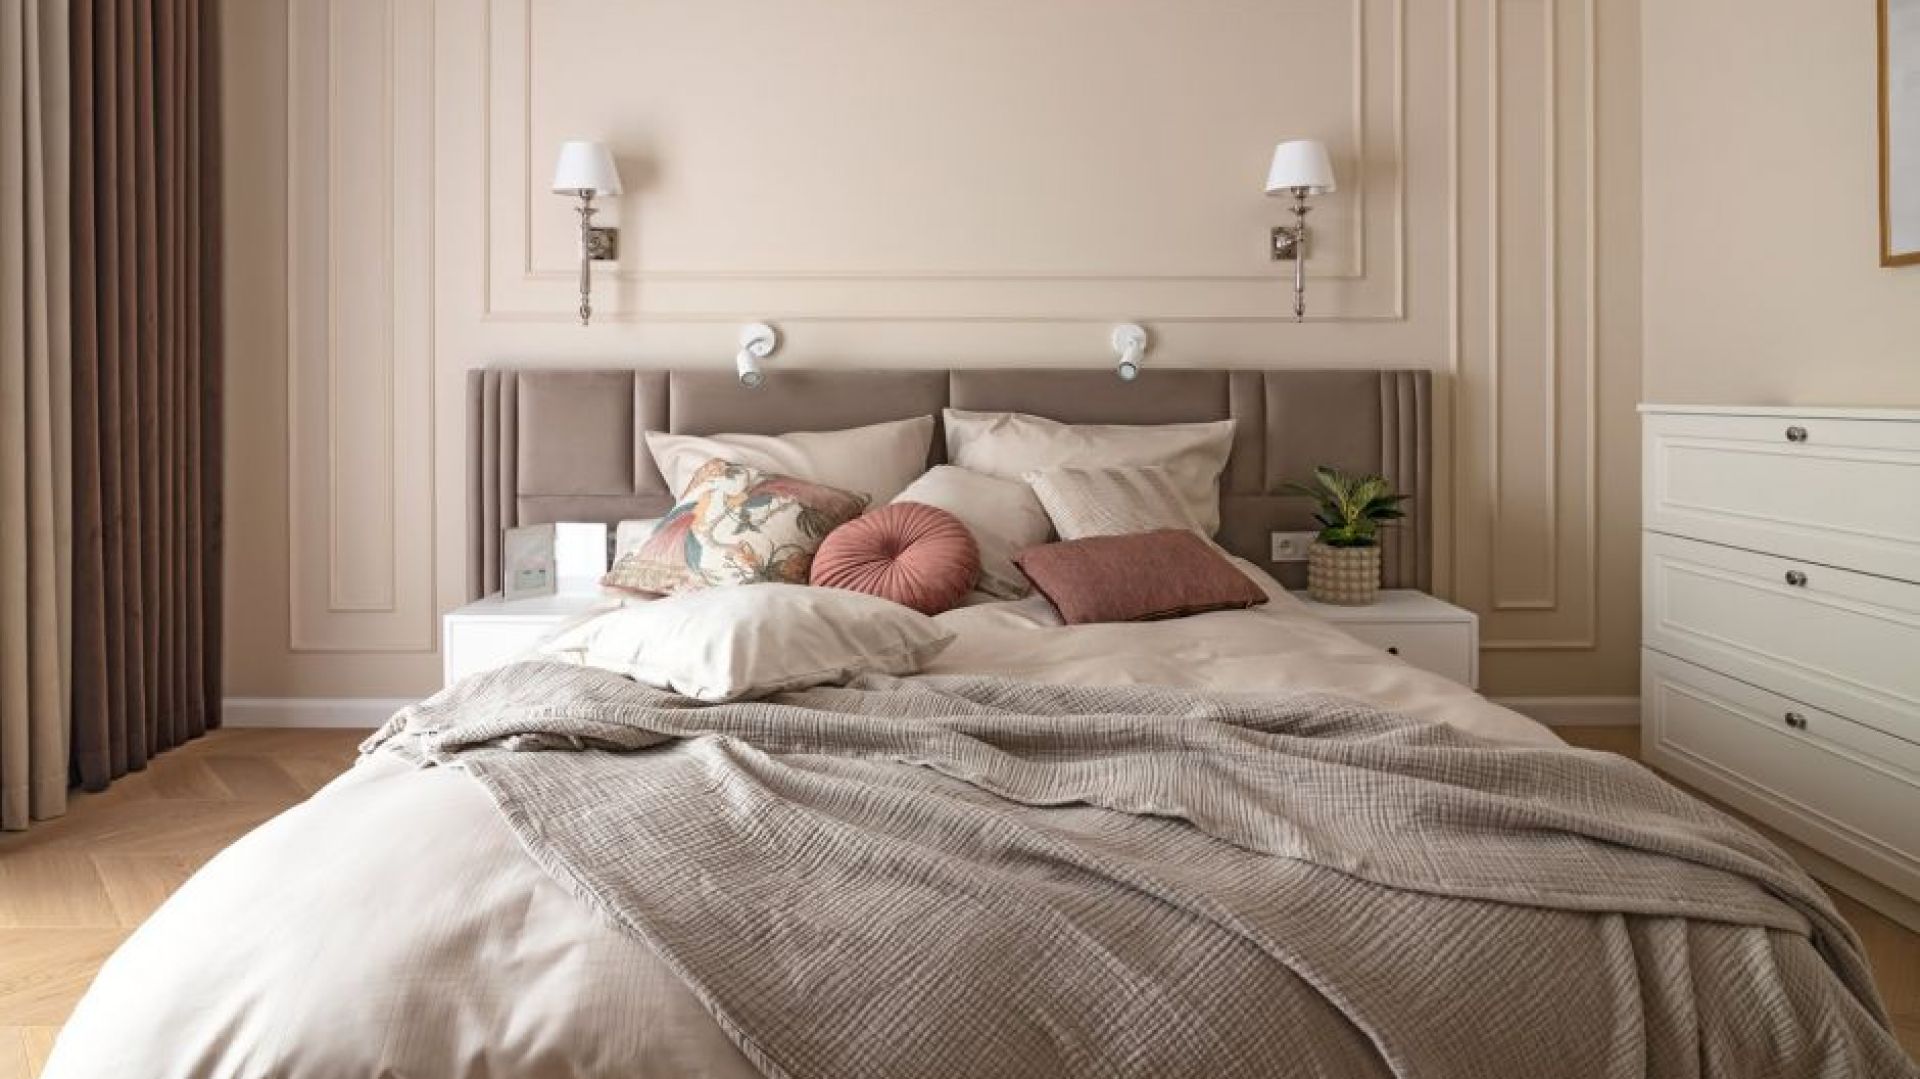 Ściana za łóżkiem w sypialni: 25 pięknych zdjęć. Zobacz wszystkie!